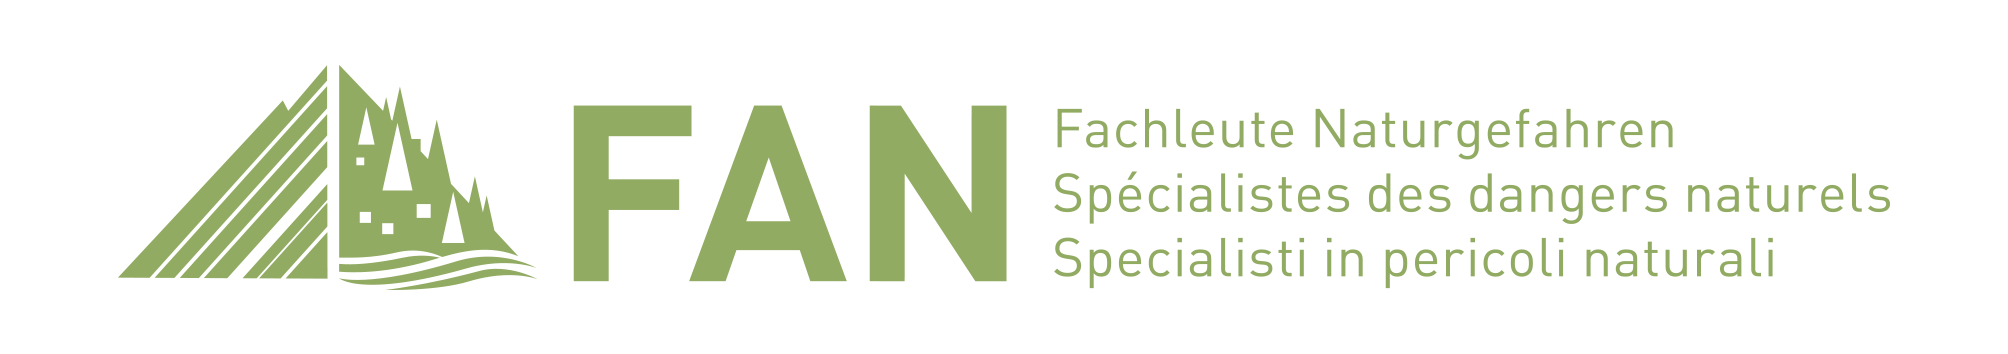 FAN Logo - Fachleute Naturgefahren